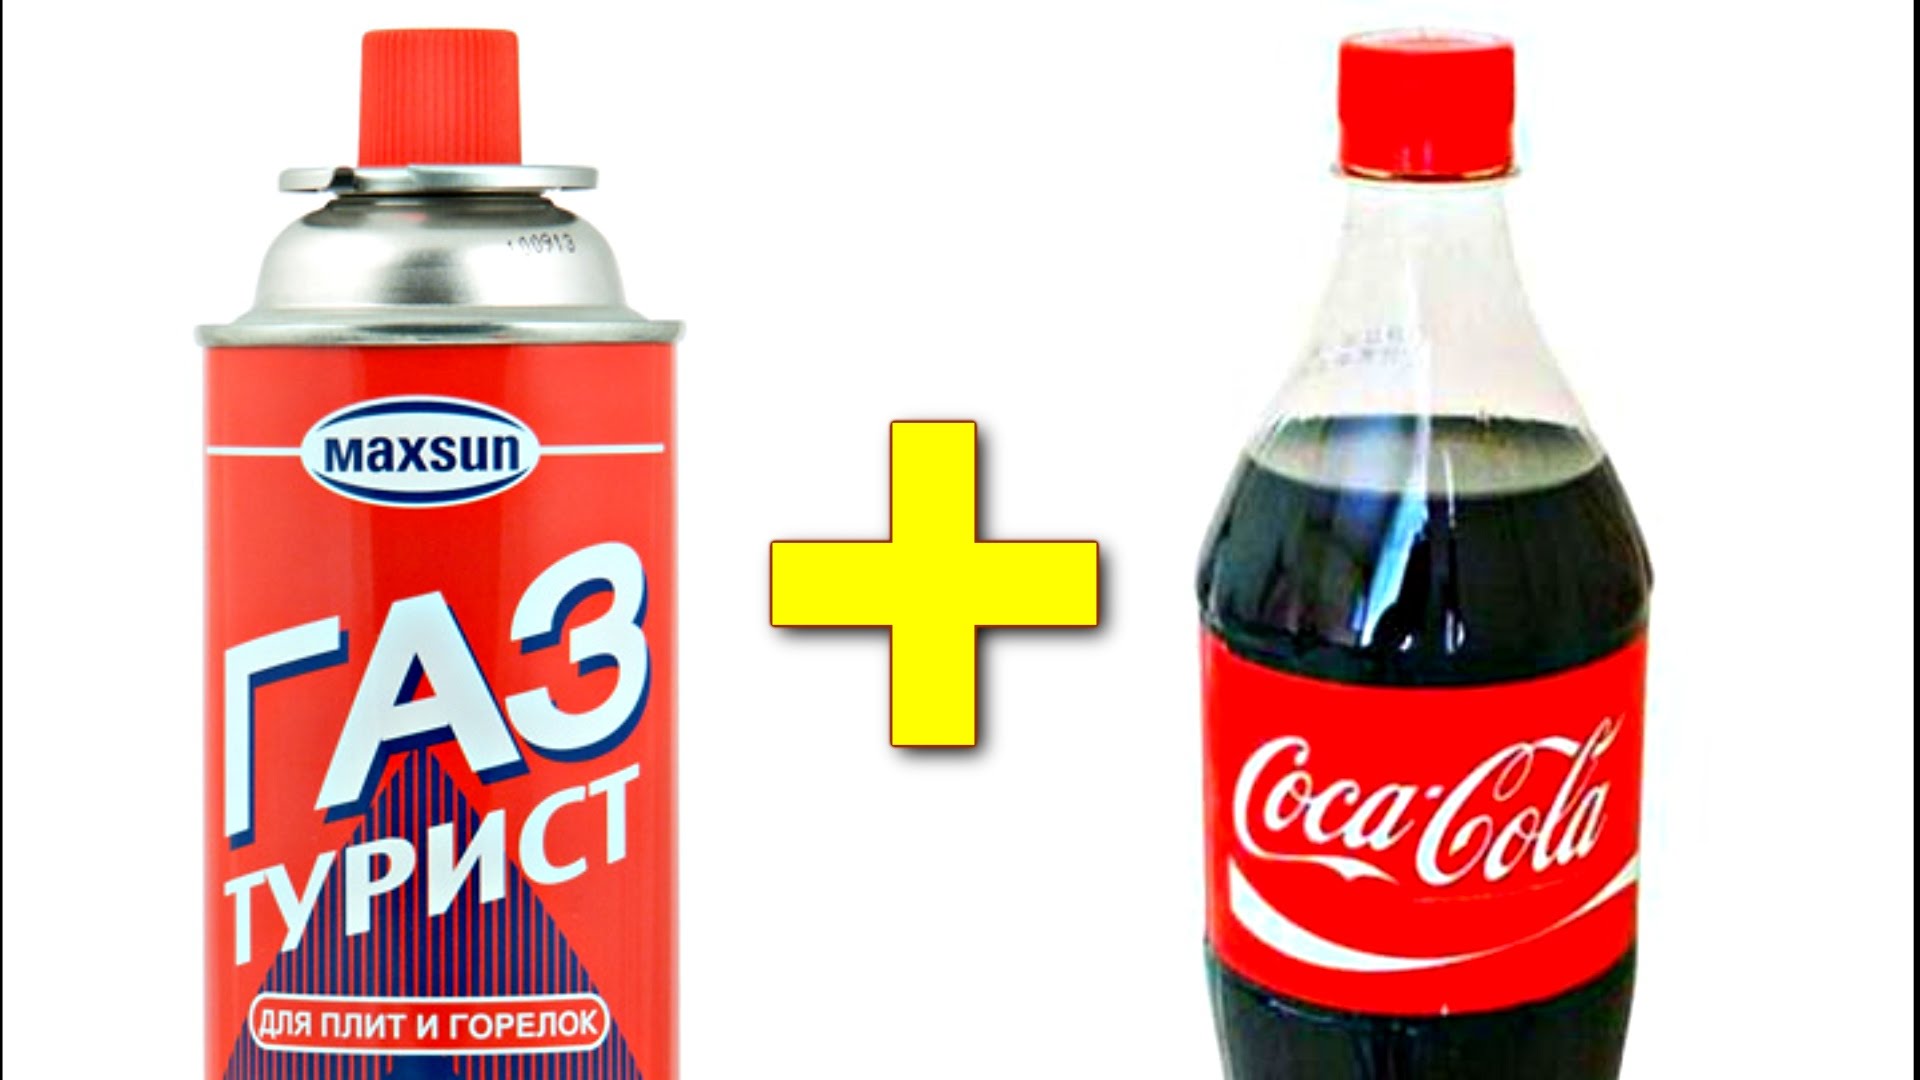 Coca cola and Propane